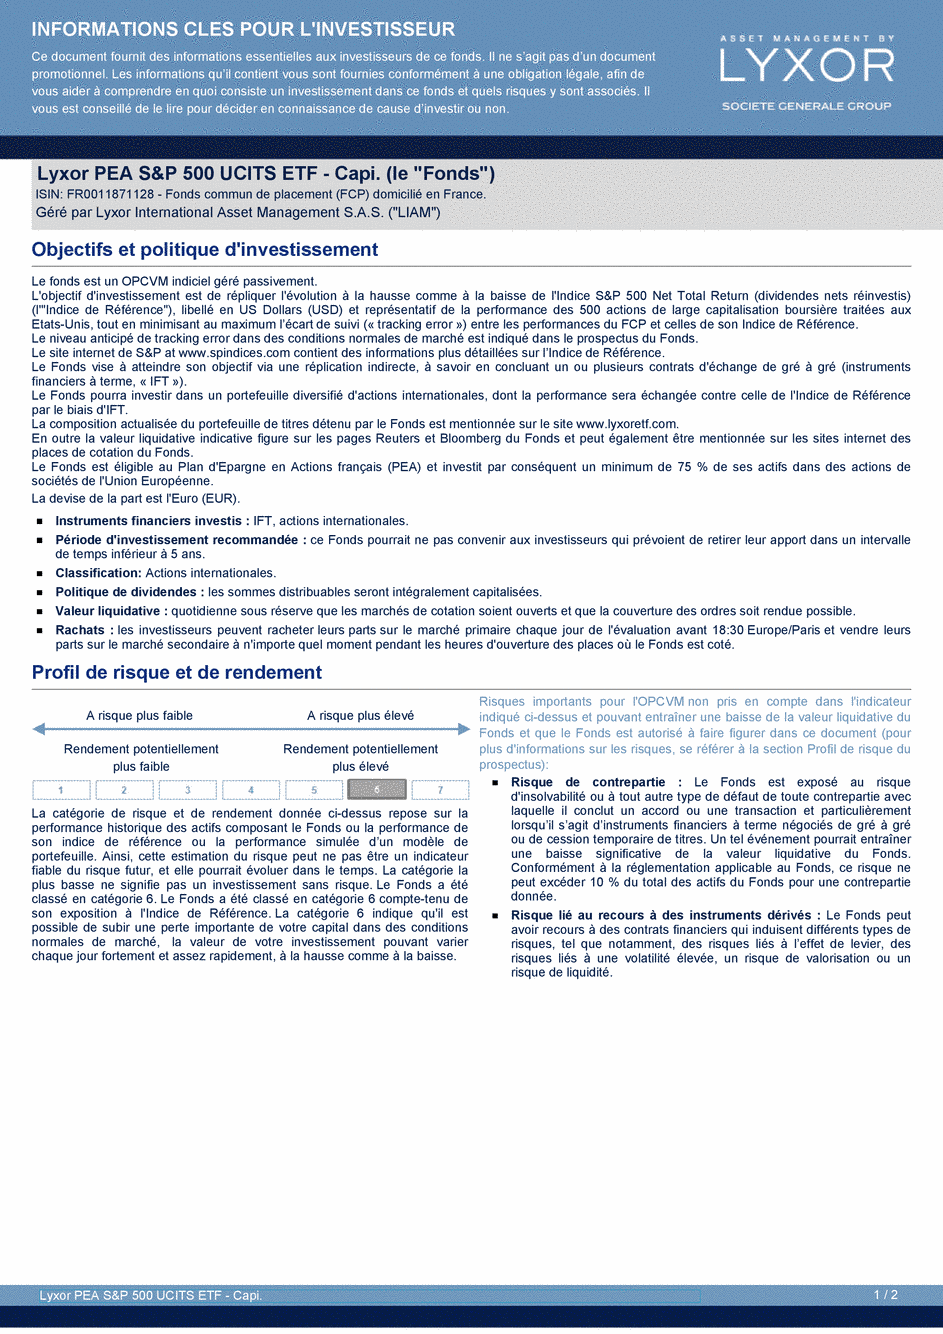 DICI Lyxor PEA S&P 500 UCITS ETF - Capi. - 19/02/2021 - Français